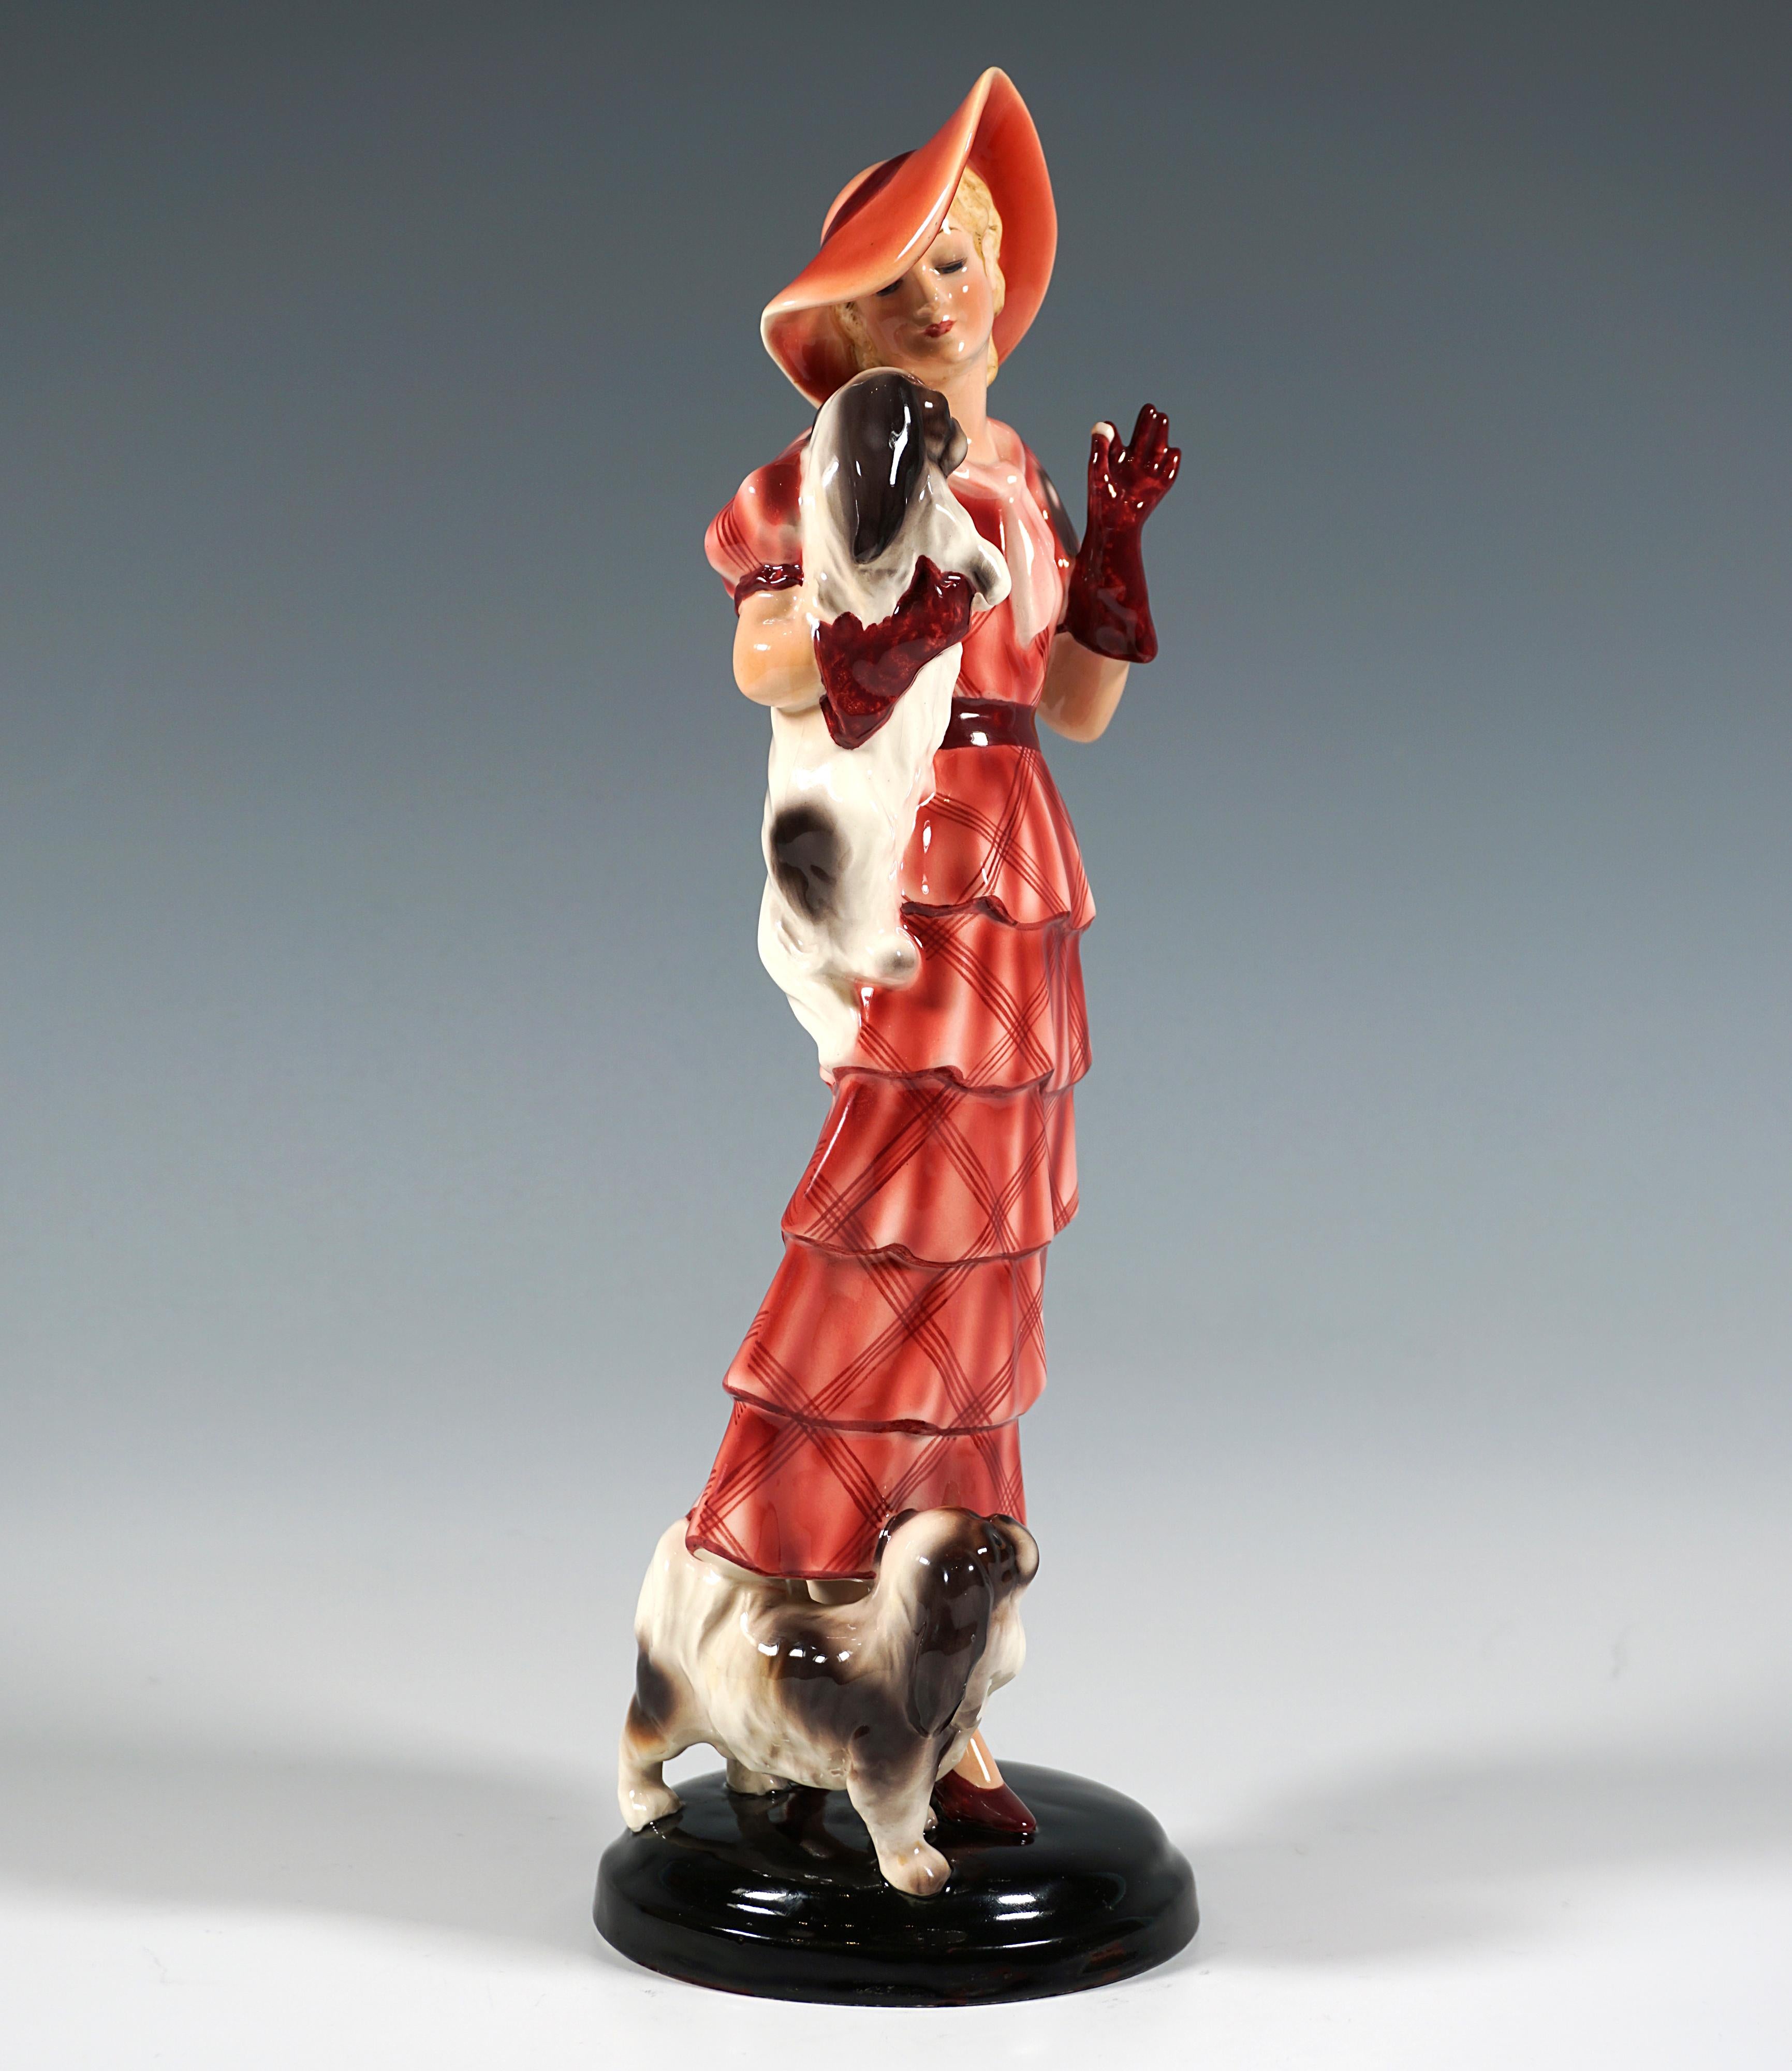 Très rare figurine de Vienne de Goldscheider des années 1930 :
Représentation d'une élégante dame debout, vêtue d'une longue robe rouge à carreaux et à volants, d'un chapeau assorti et de gants rouges, tenant un pékinois dans son bras droit et lui